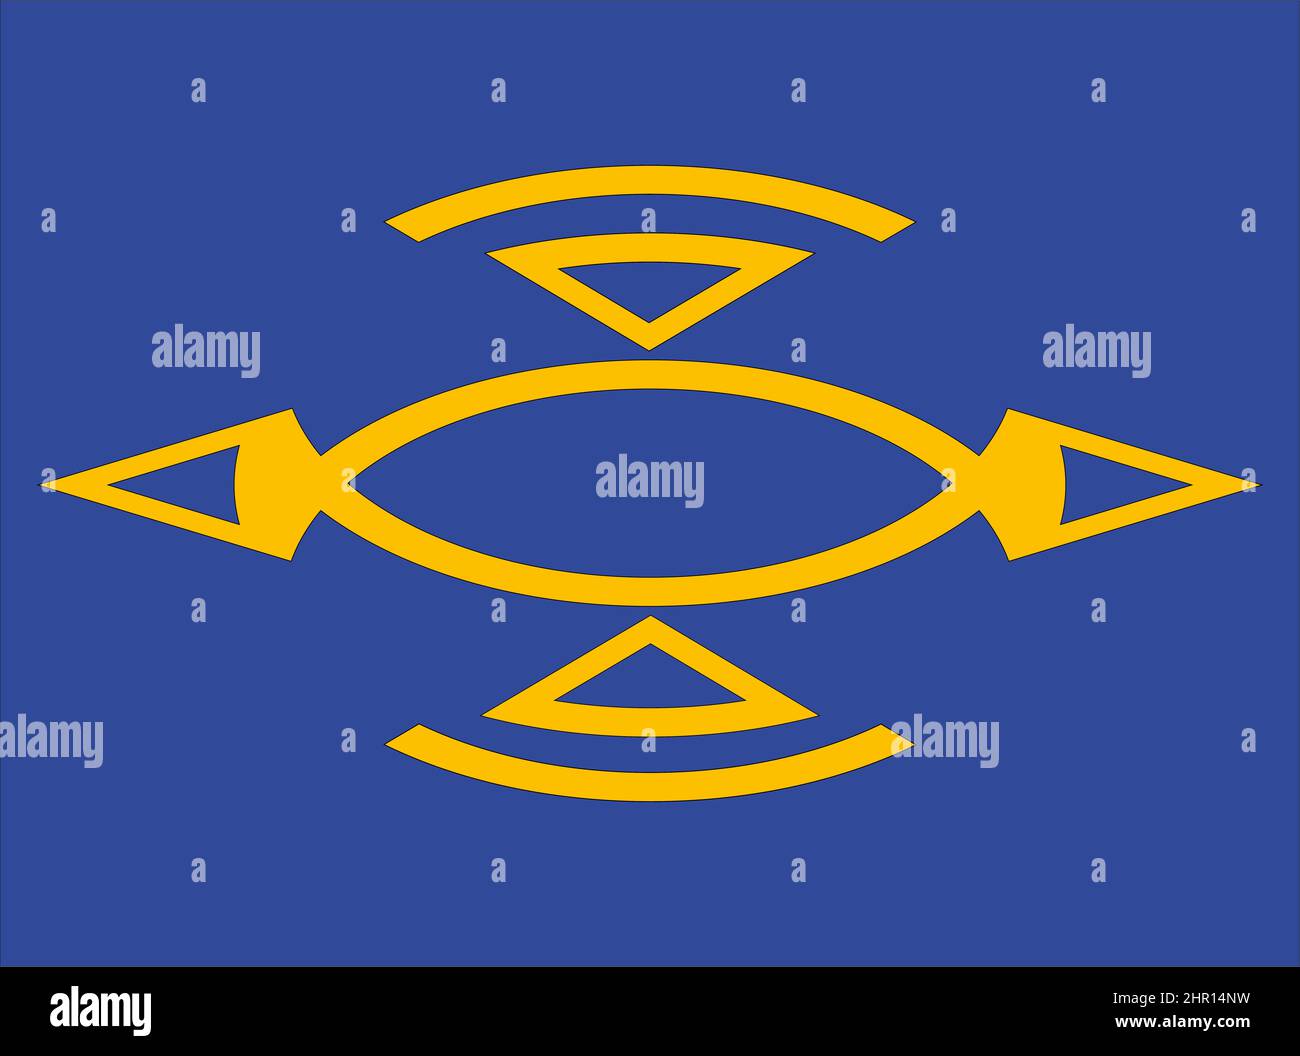 Vektorgrafiken eines unregelmäßig geformten Objekts, das durch Ellipse- und Dreiecksumwandlungen erstellt wurde und vor einem blauen Hintergrund platziert wird. Stockfoto